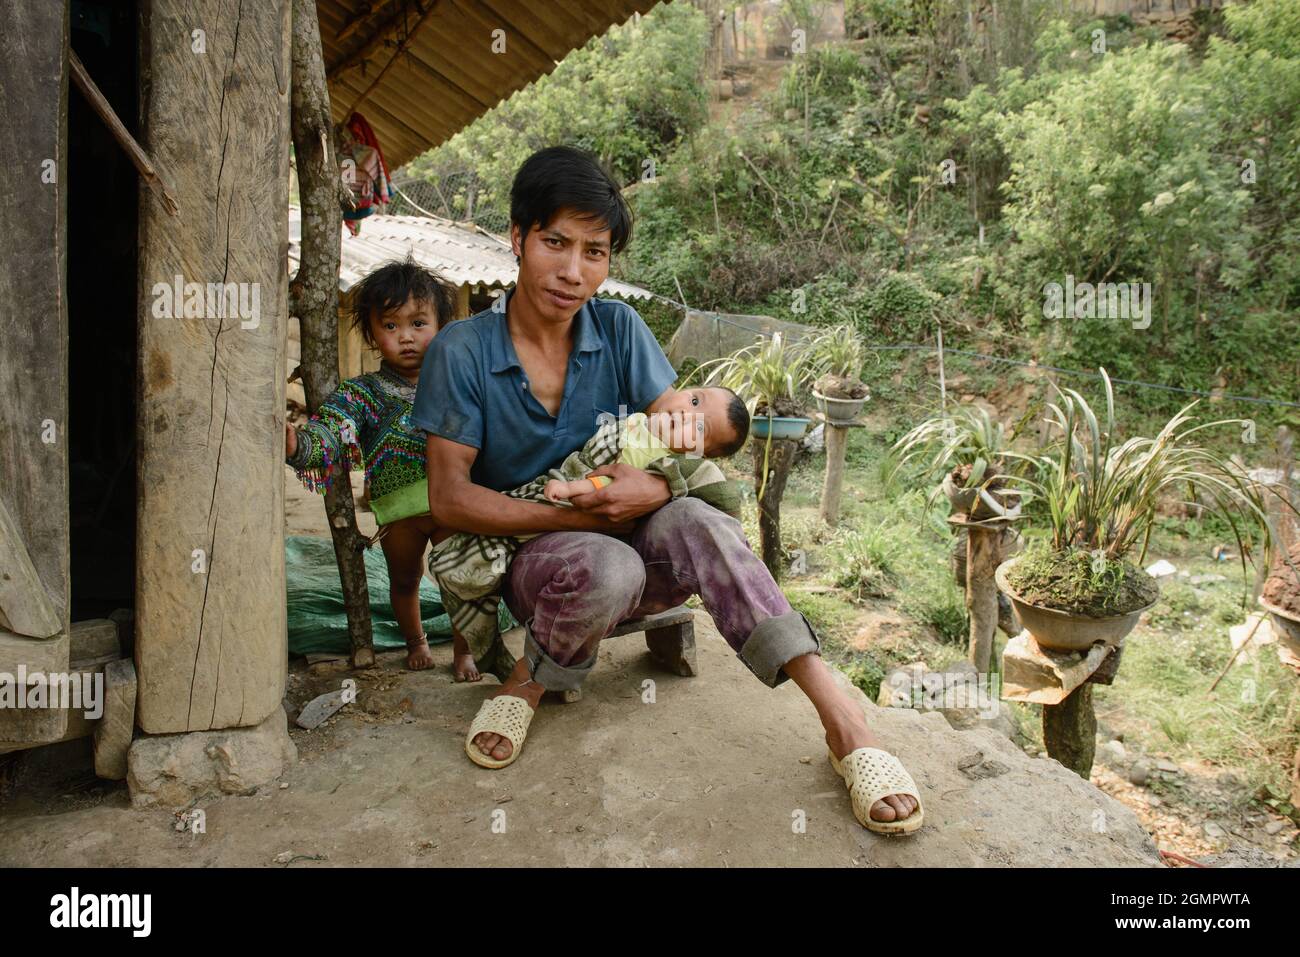 Sapa, Vietnam - 14 de abril de 2016: Padre vietnamita con hijos en casa mientras su esposa está trabajando. Paternidad en Asia, zona rural pobre. Foto de stock